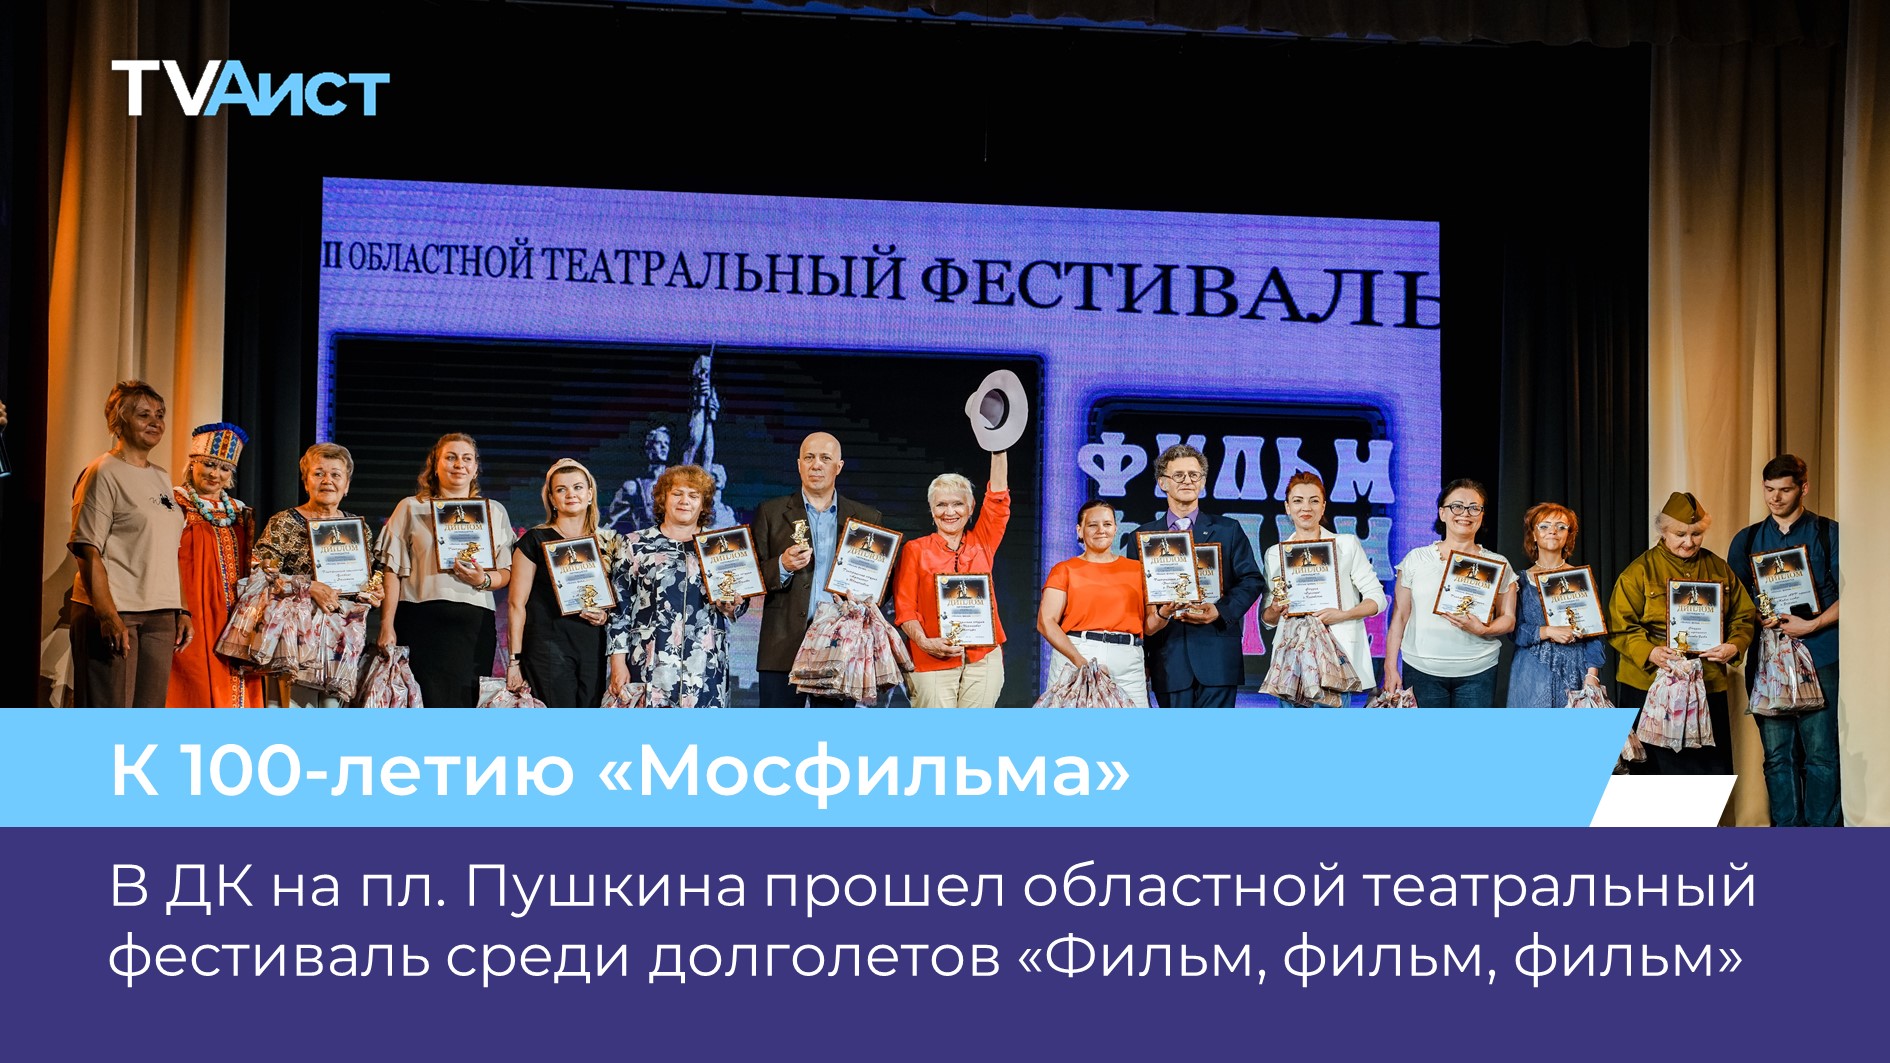 В ДК на пл. Пушкина прошел областной театральный фестиваль среди долголетов «Фильм, фильм, фильм».